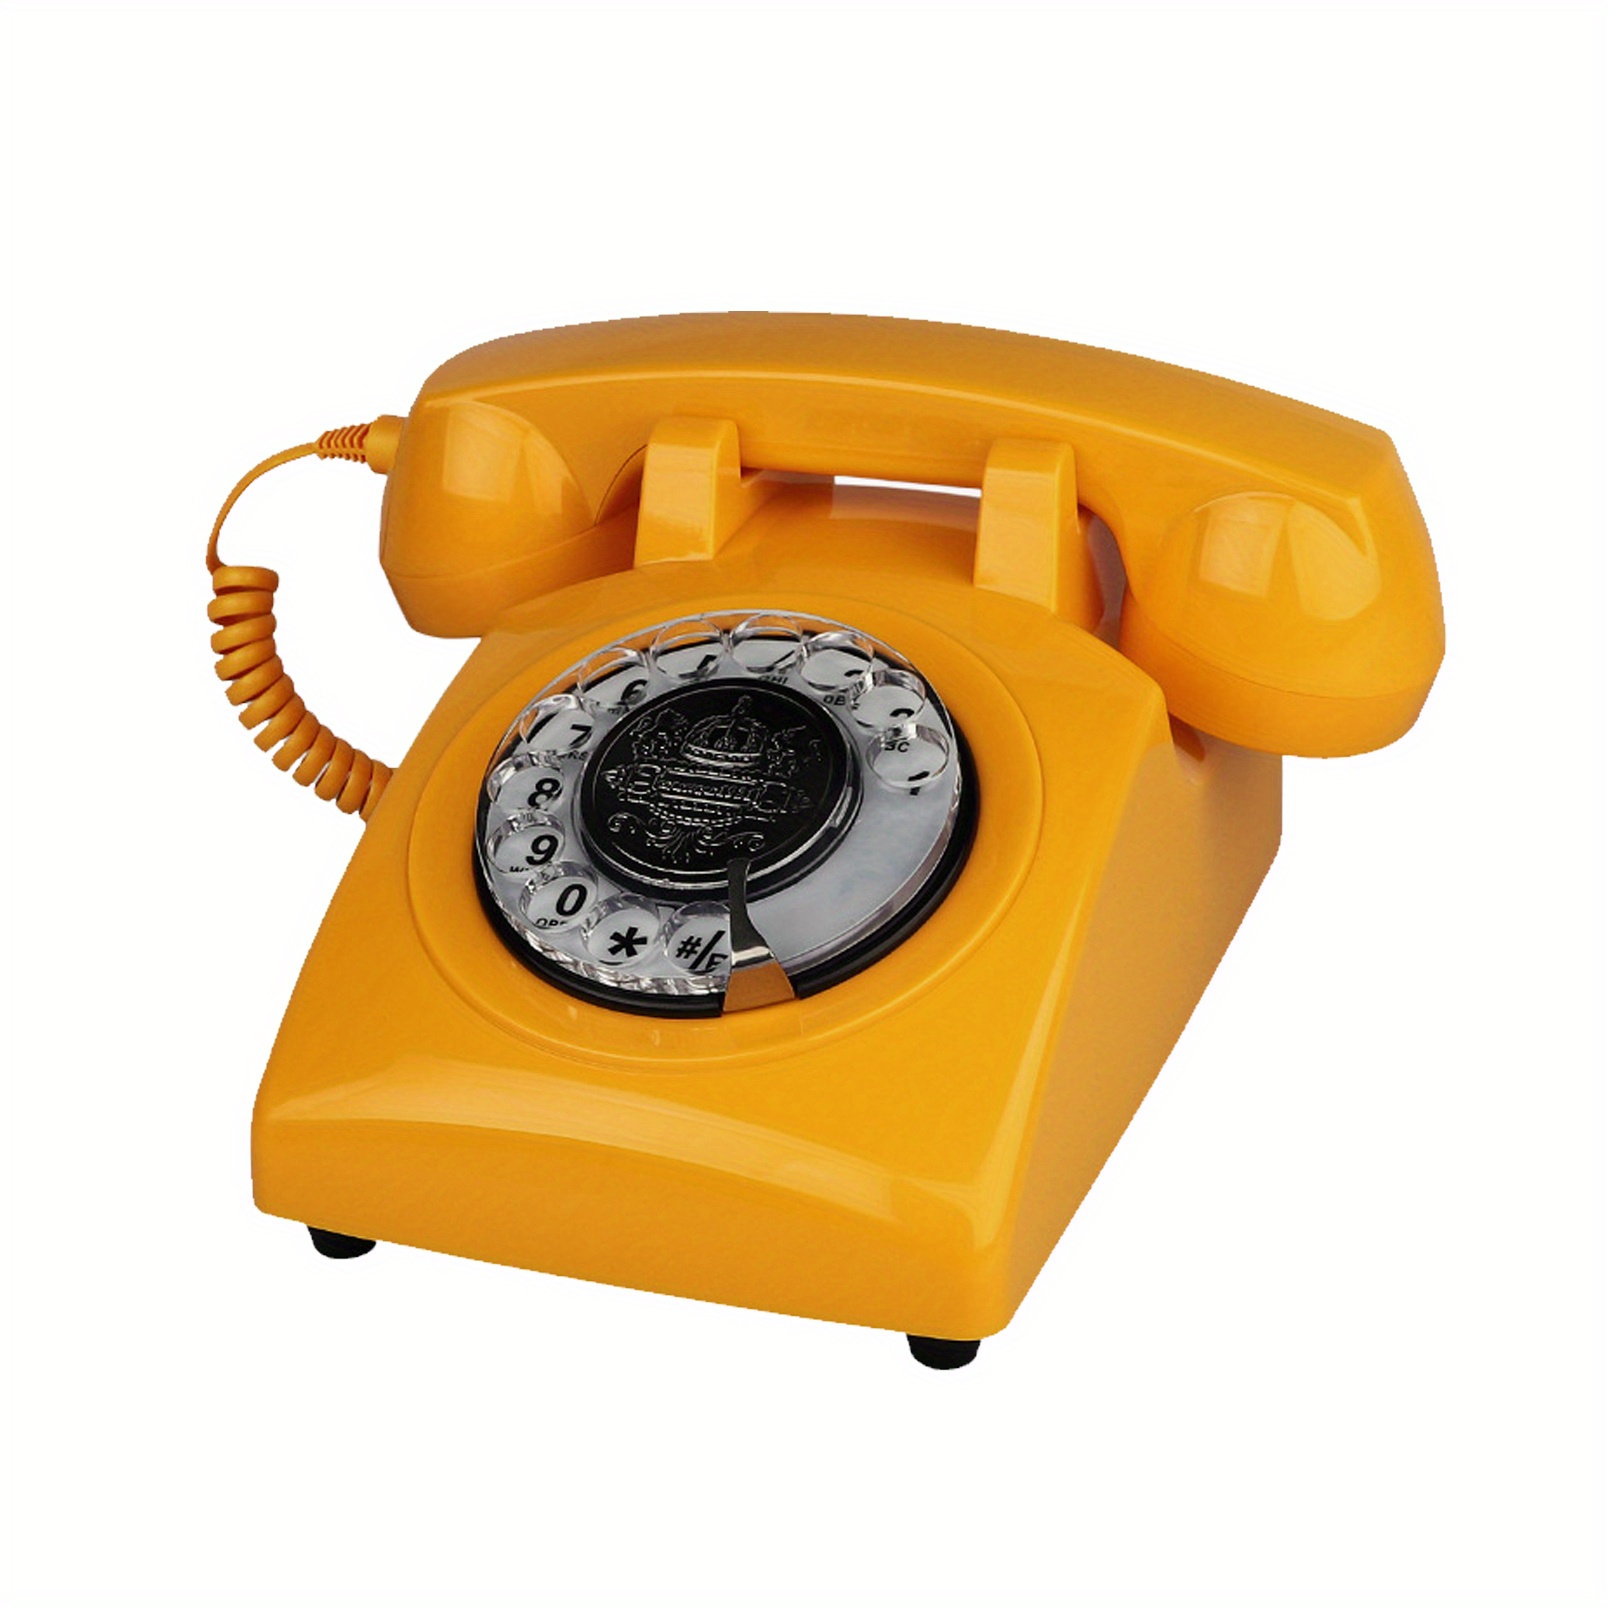 Teléfono vintage, teléfono fijo con cable retro giratorio, teléfonos fijos  para personas mayores, utilizado en hogares, oficinas, hoteles, etc. Es el